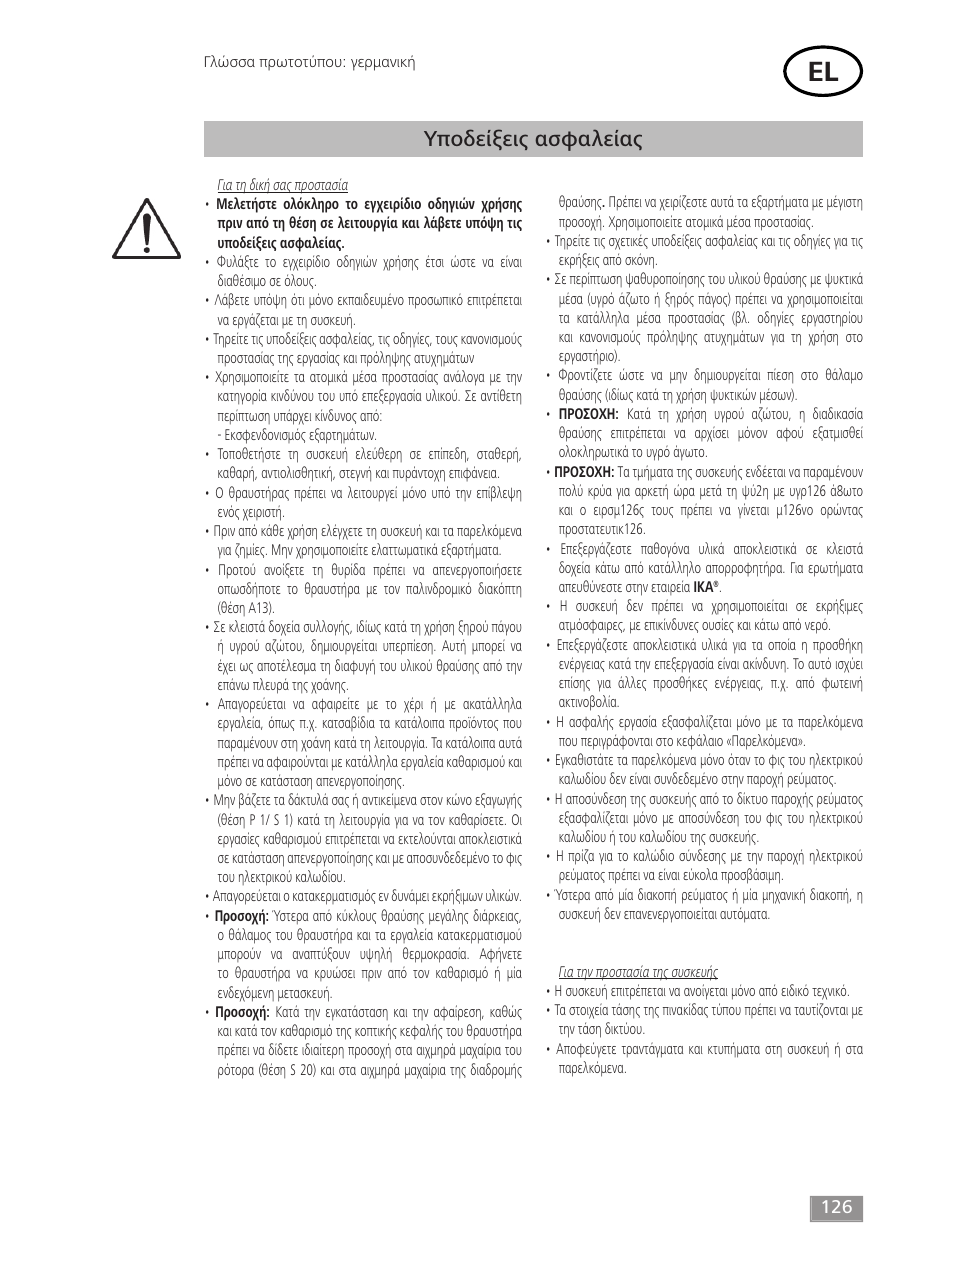 Υποδείξεις ασφαλείας | IKA MF 10 basic User Manual | Page 126 / 140